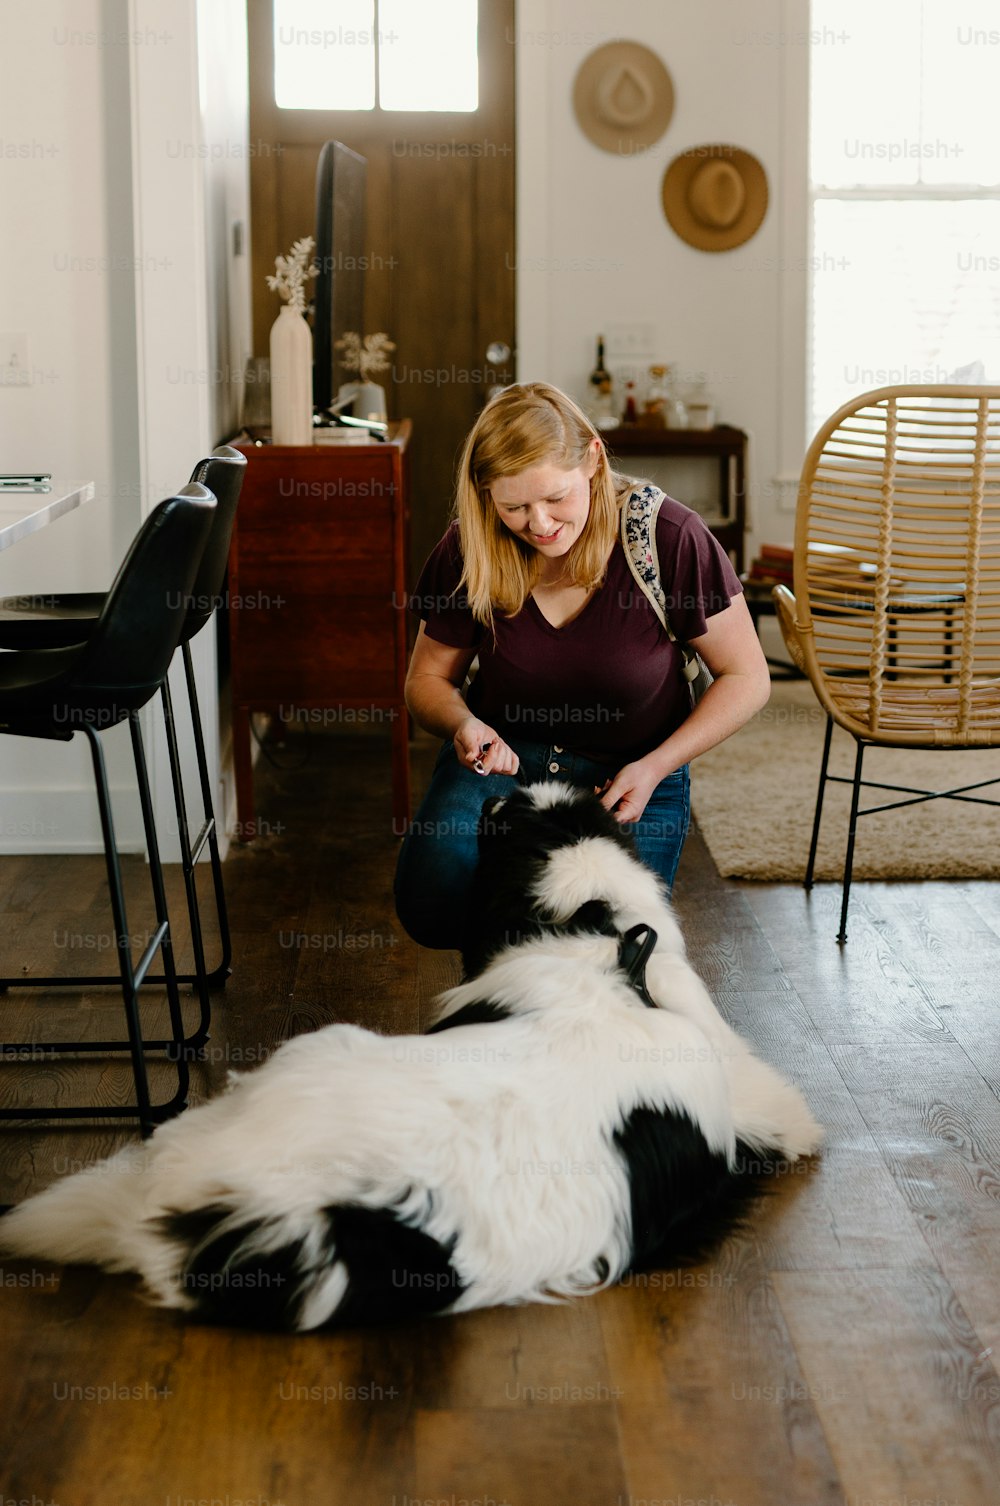 Eine Frau, die auf dem Boden sitzt und einen schwarz-weißen Hund streichelt